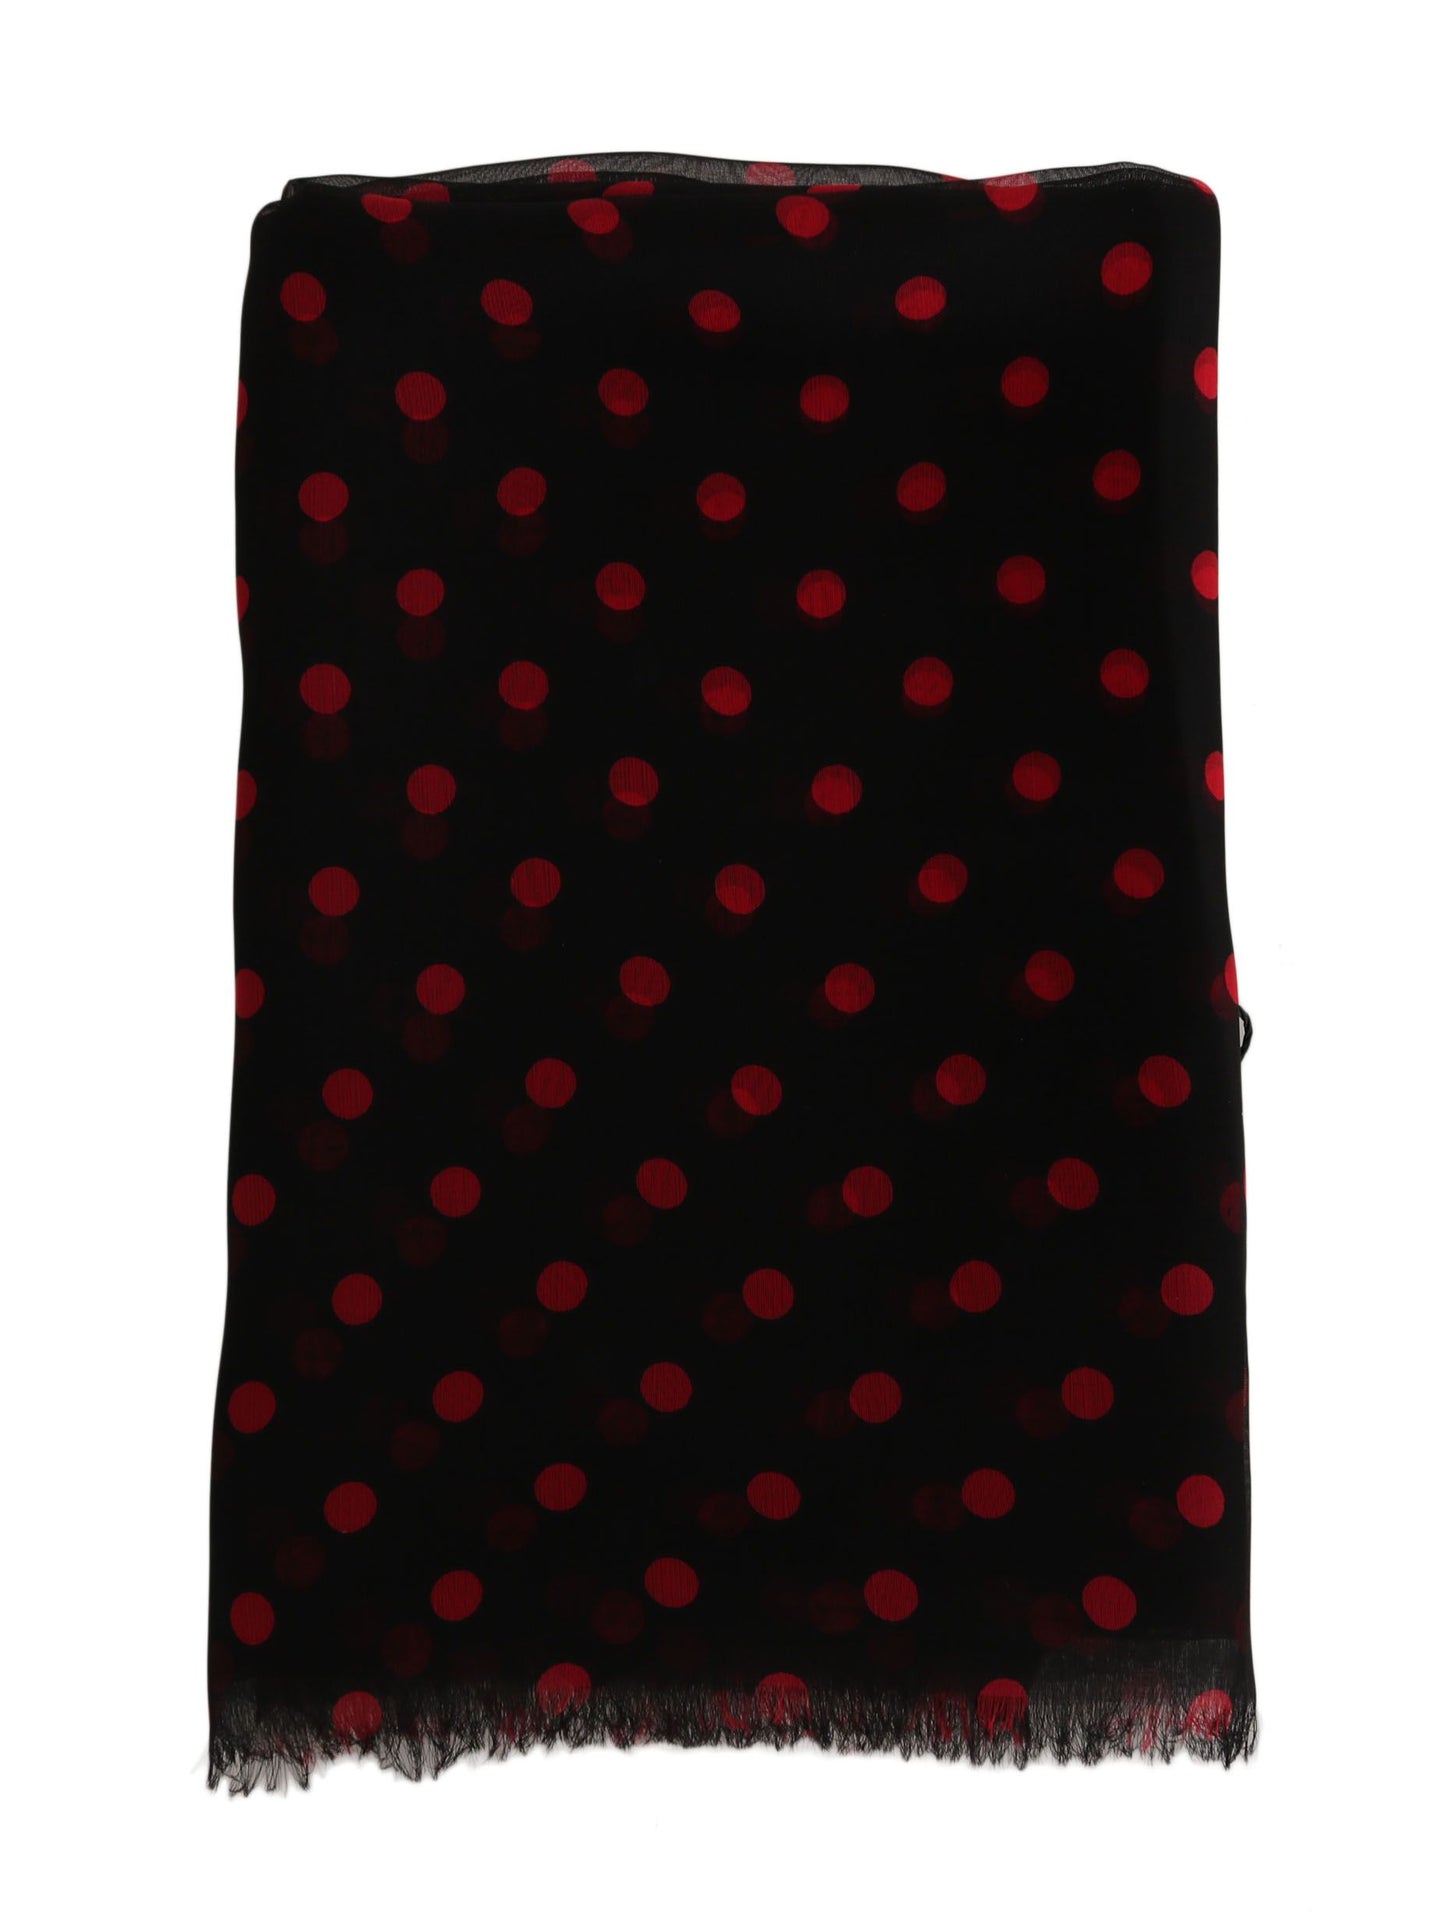 Black Red Polka Dot 100% Silk Shawl Wrap 200cm X 60cm Scarf